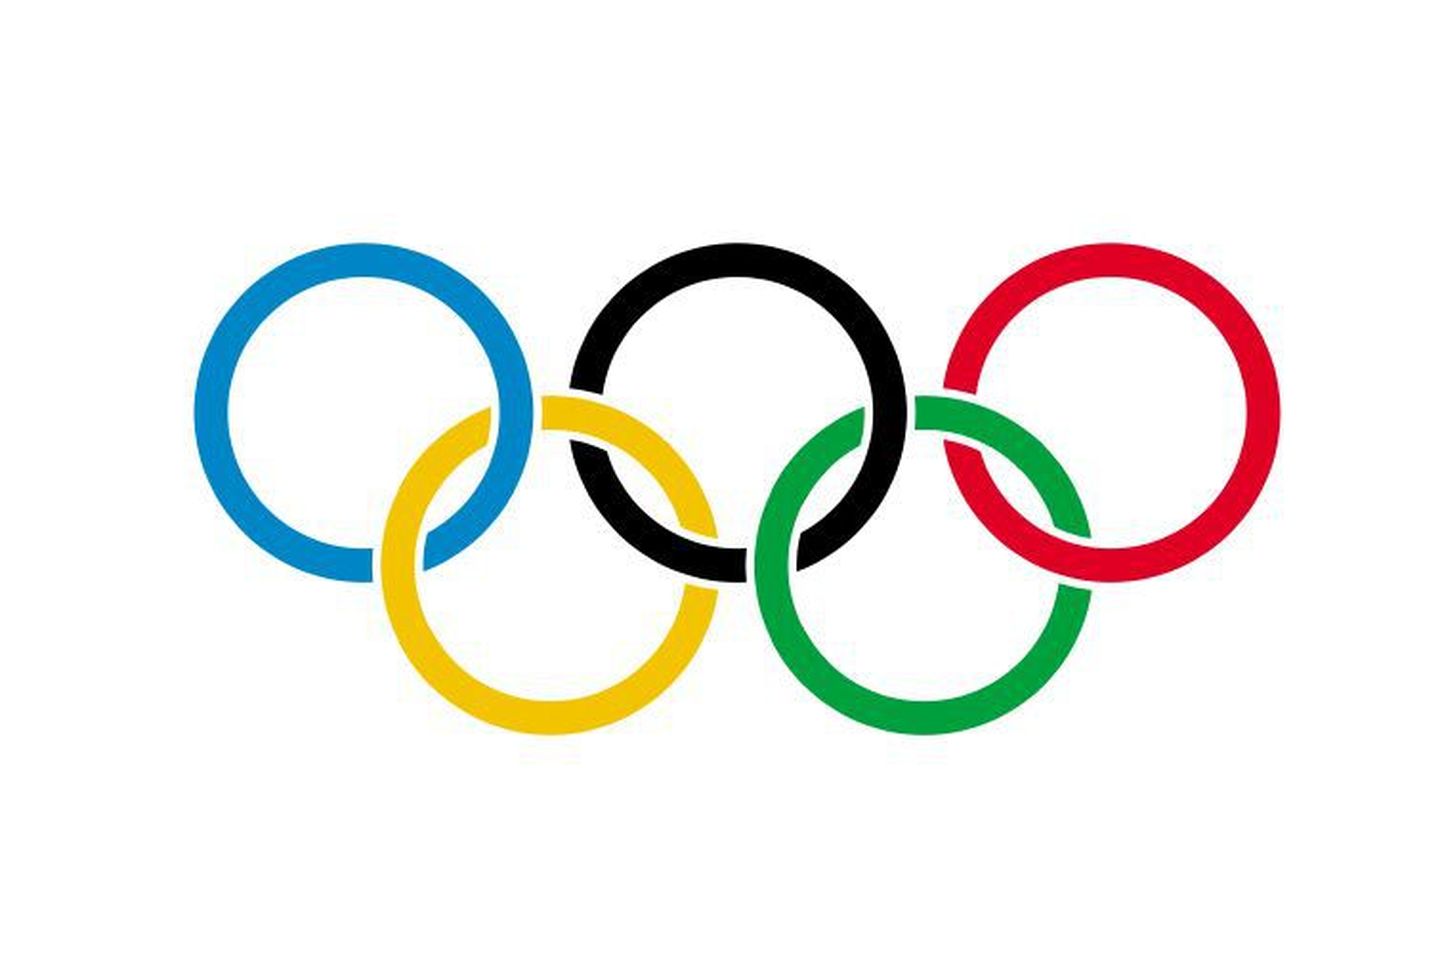 Rahvusvahelise olümpialipu sümbolid - viis omavahel ühenduses rõngast